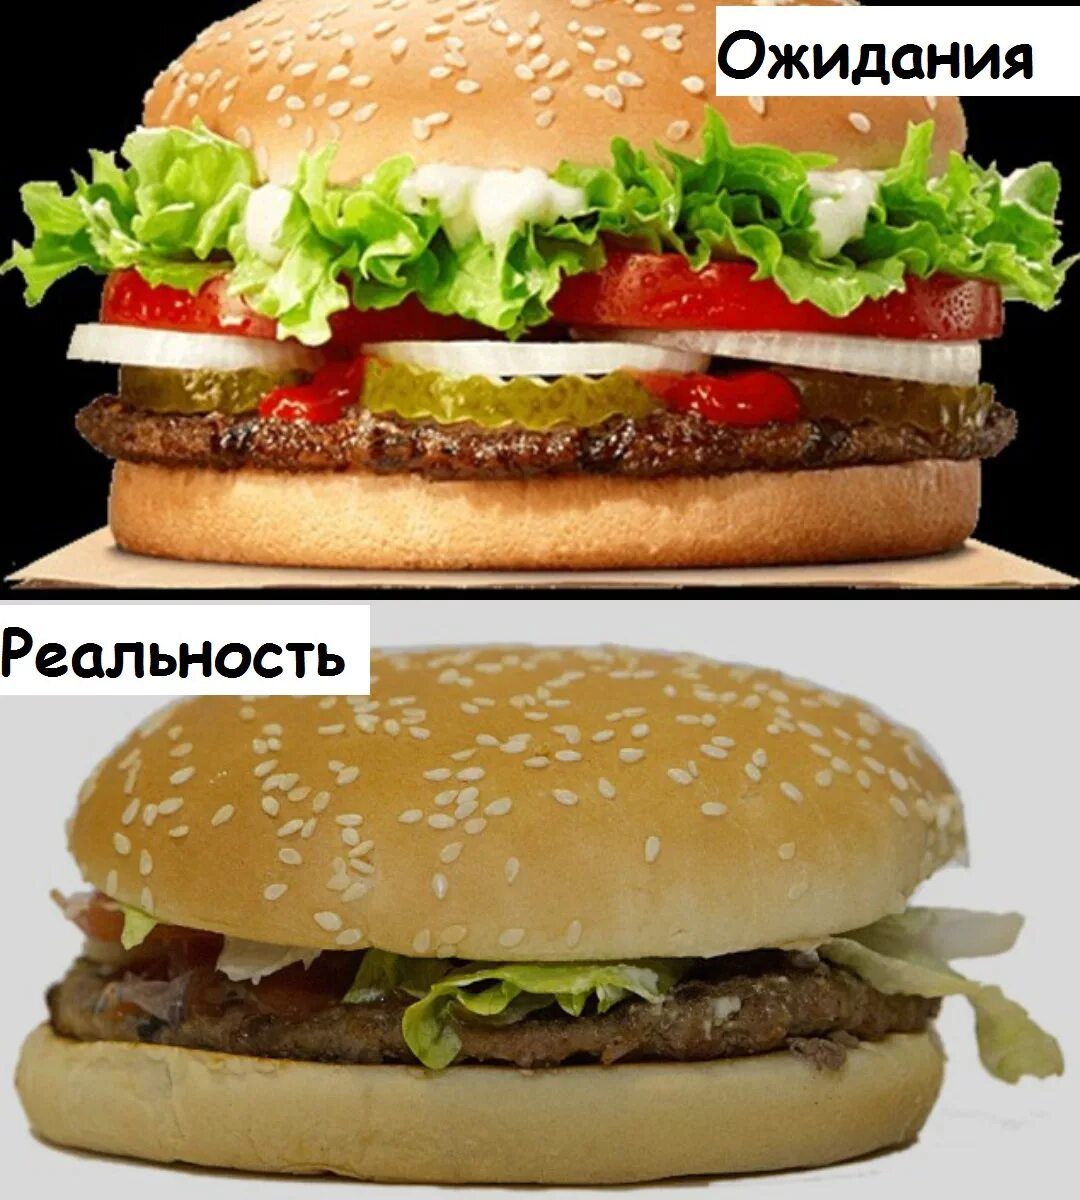 Воппер и Биг Мак. Бургер на картинке и в реальности. Гамбургер ожидание реальность. Гамбургер в рекламе и в жизни. Реальность в рекламе